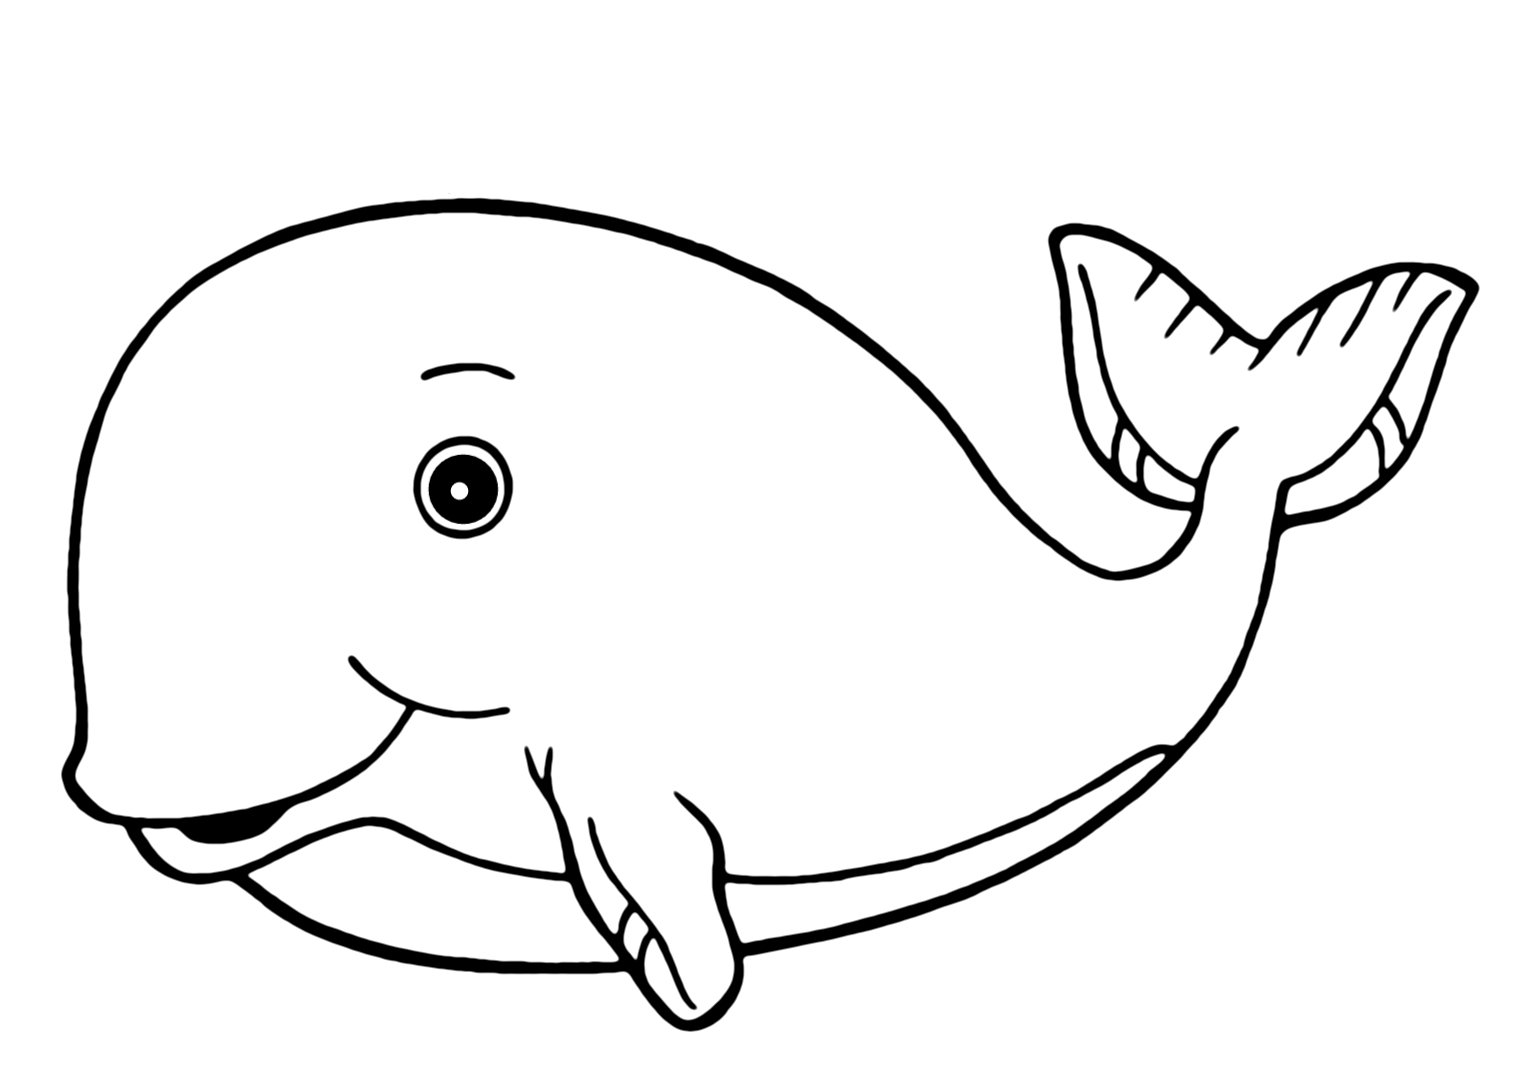 Рисунок кита для детей 4-5 лет